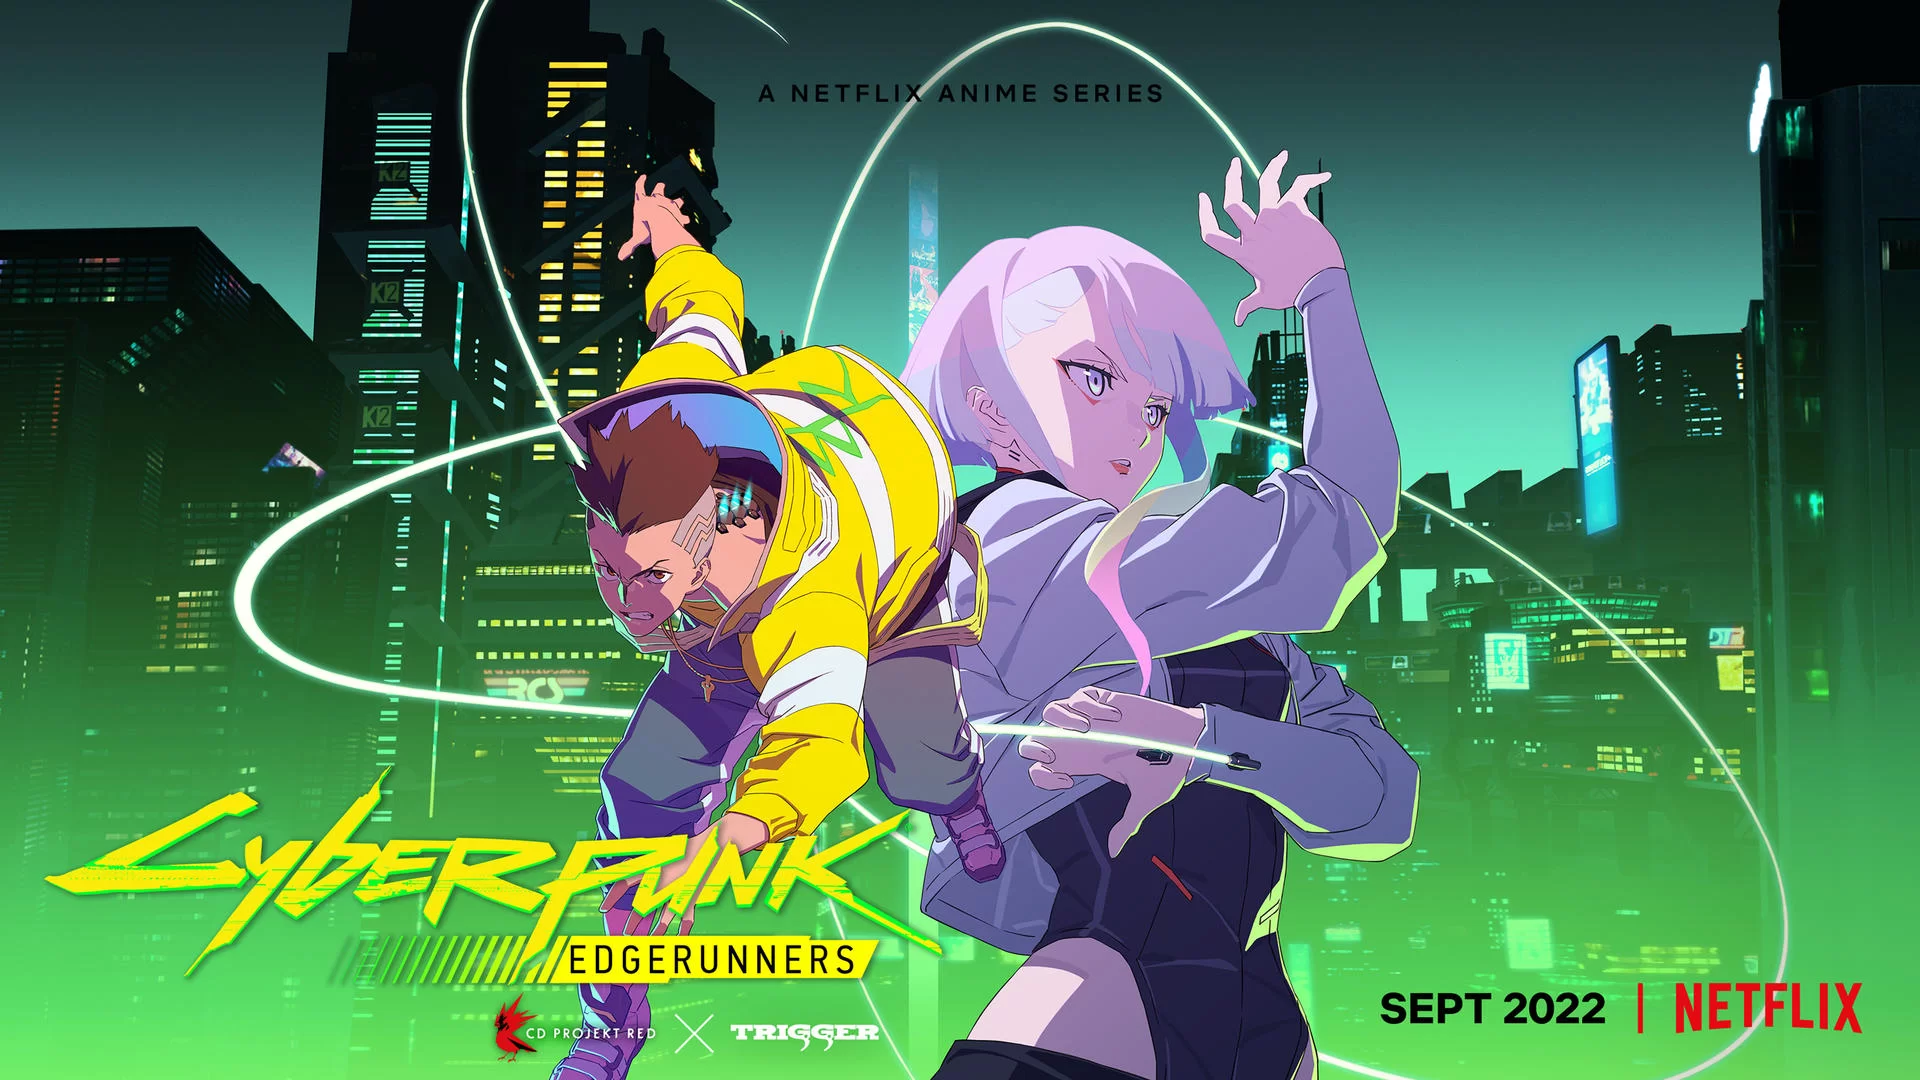 cyberpunk edgerunners netflix anime season 1 coming to netflix september 2022